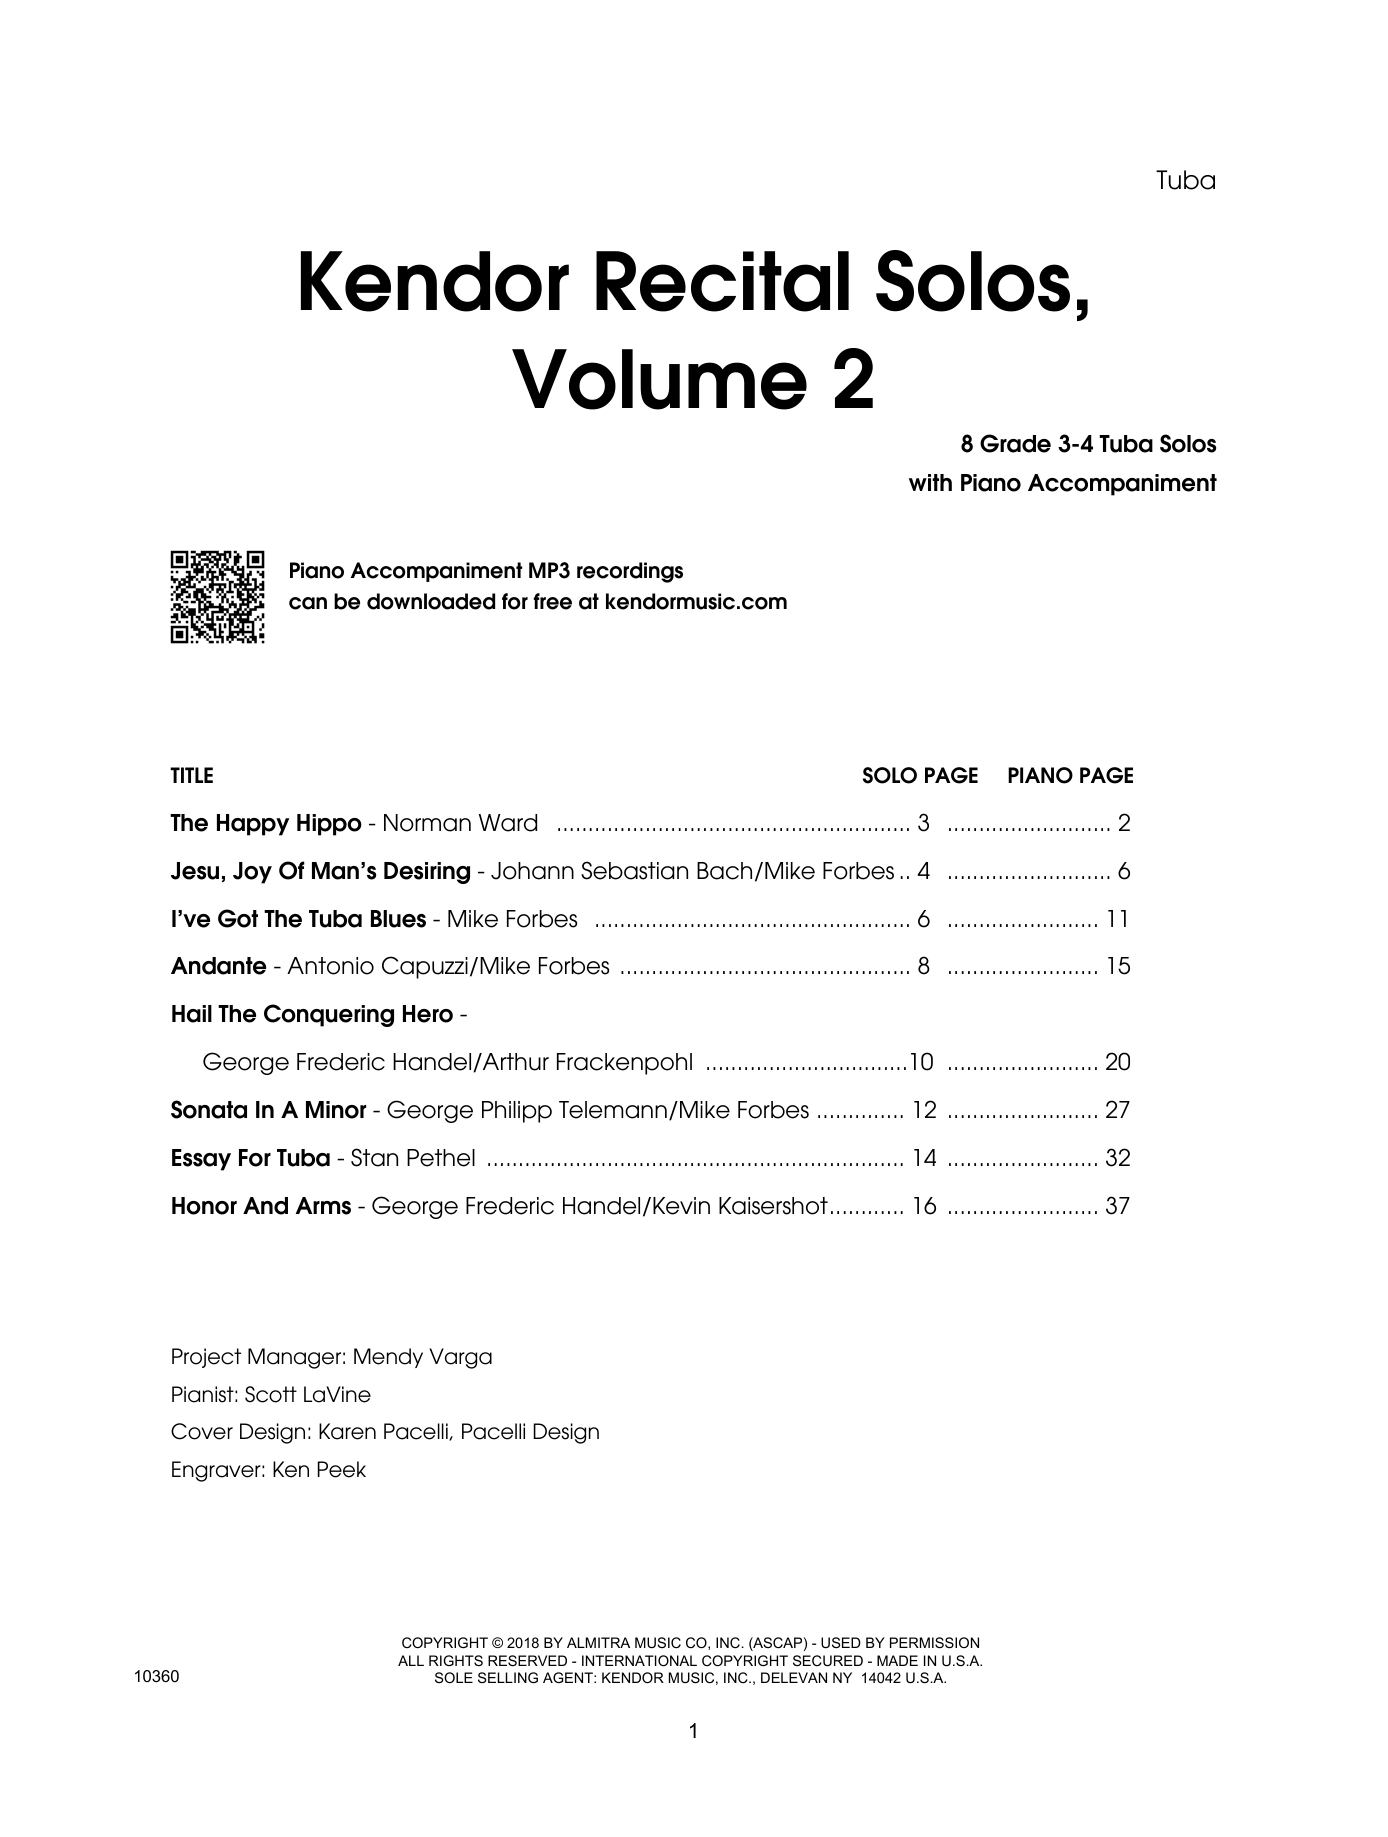 Kendor Recital Solos, Volume 2 - Tuba - Tuba (Brass Solo) von Various